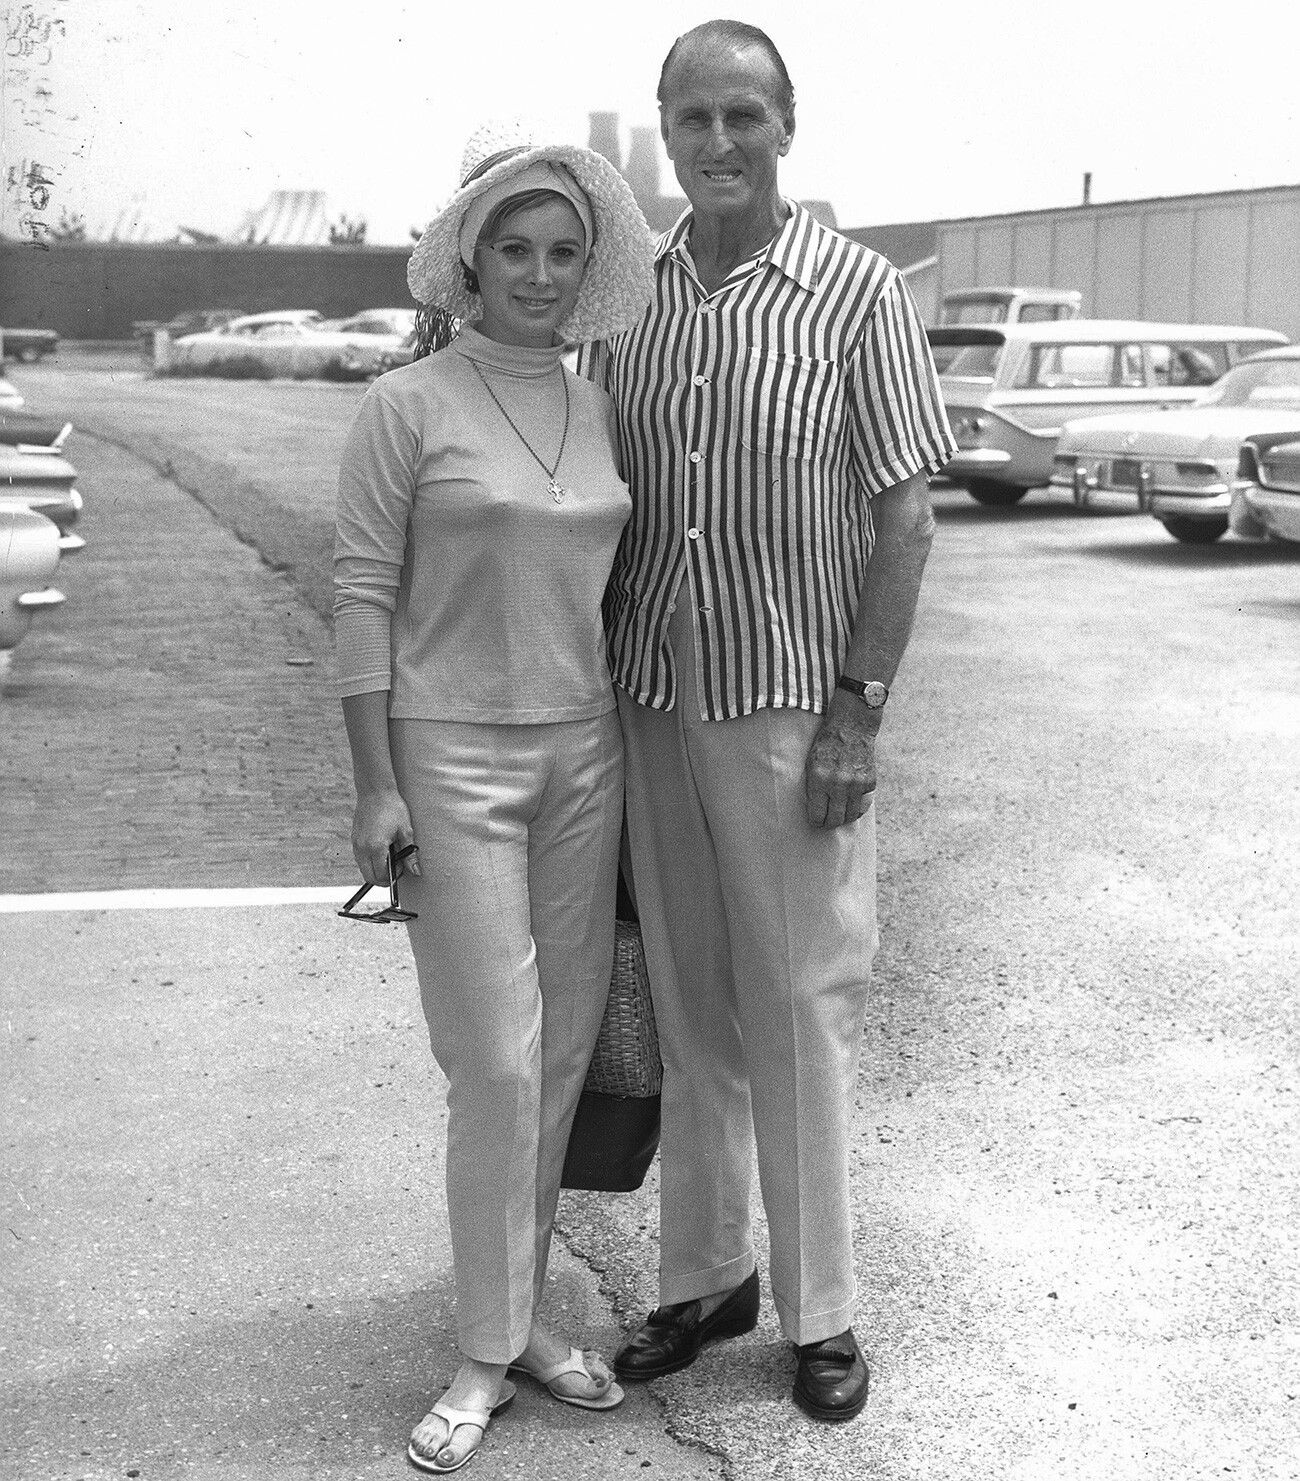 L’attrice e modella americana Jill St. John e il principe Serge Obolensky, Southampton (Long Island), circa 1960

